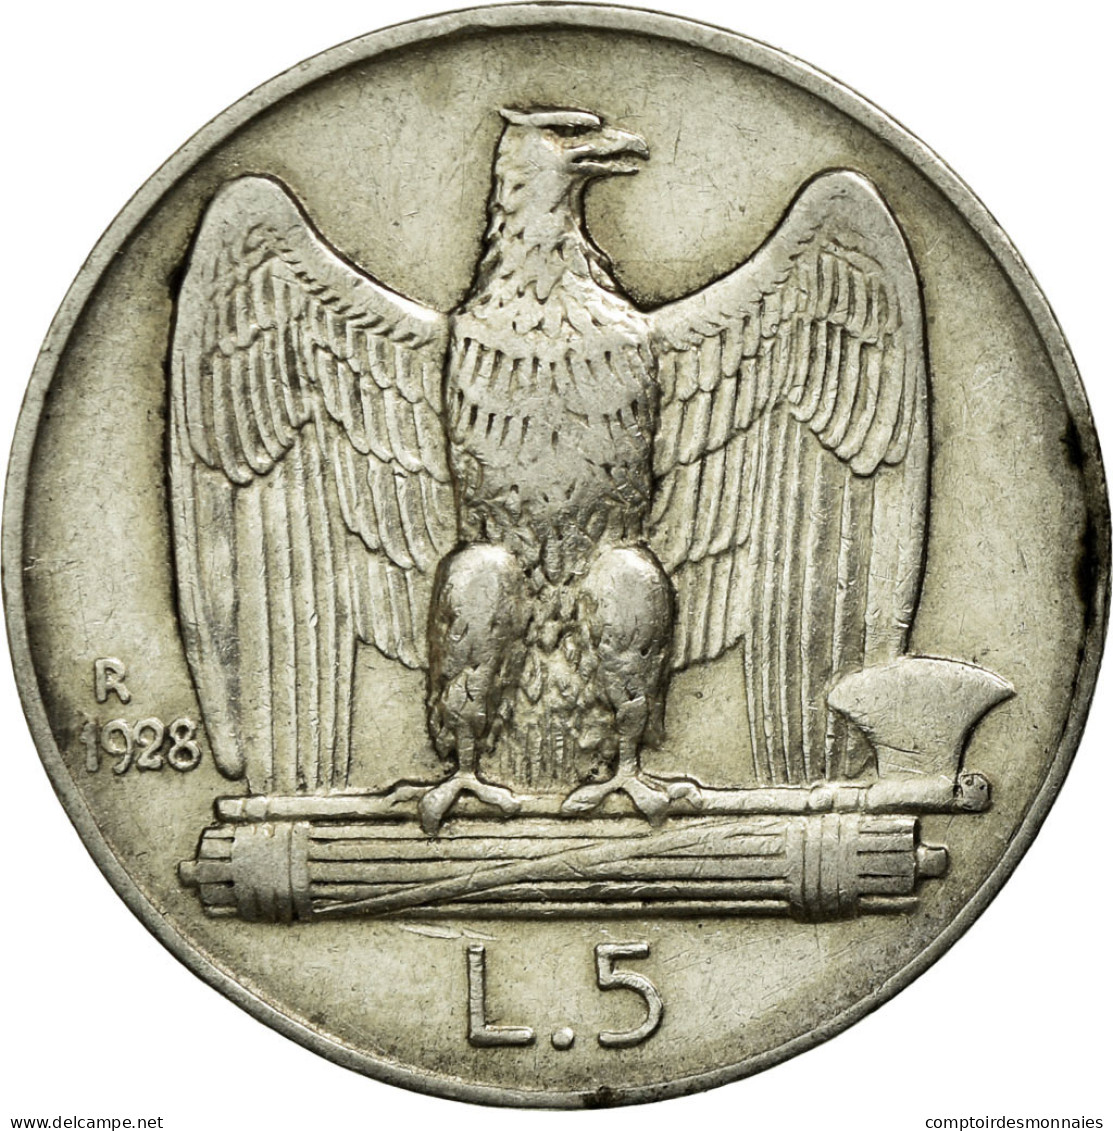 Monnaie, Italie, Vittorio Emanuele III, 5 Lire, 1928, Rome, TTB, Argent, KM:67.1 - 1900-1946 : Victor Emmanuel III & Umberto II